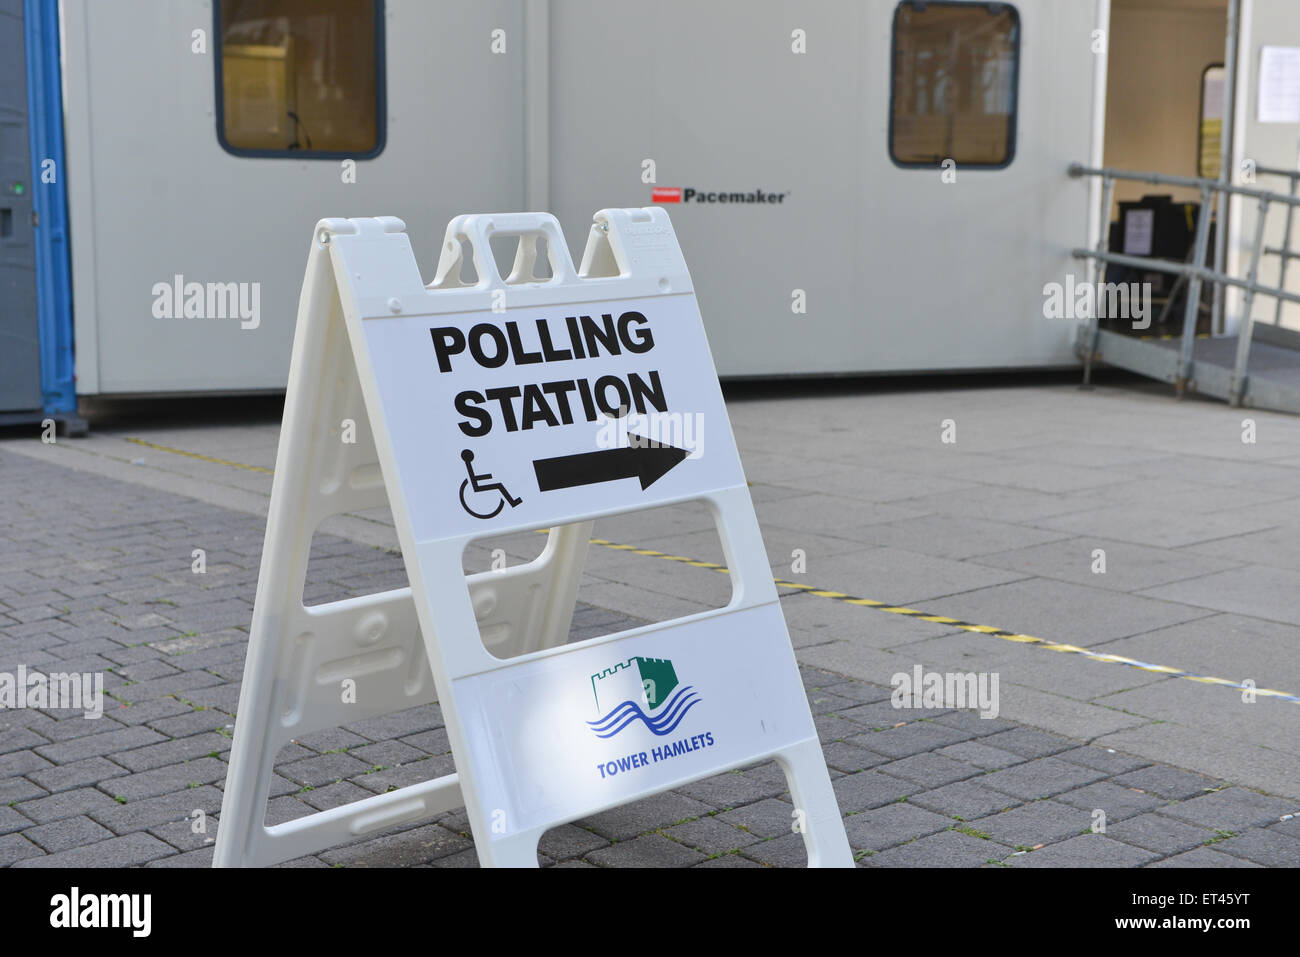 Stazione di polling a East India stazione DLR Tower Hamlets London mayoral elezioni 2015 Foto Stock